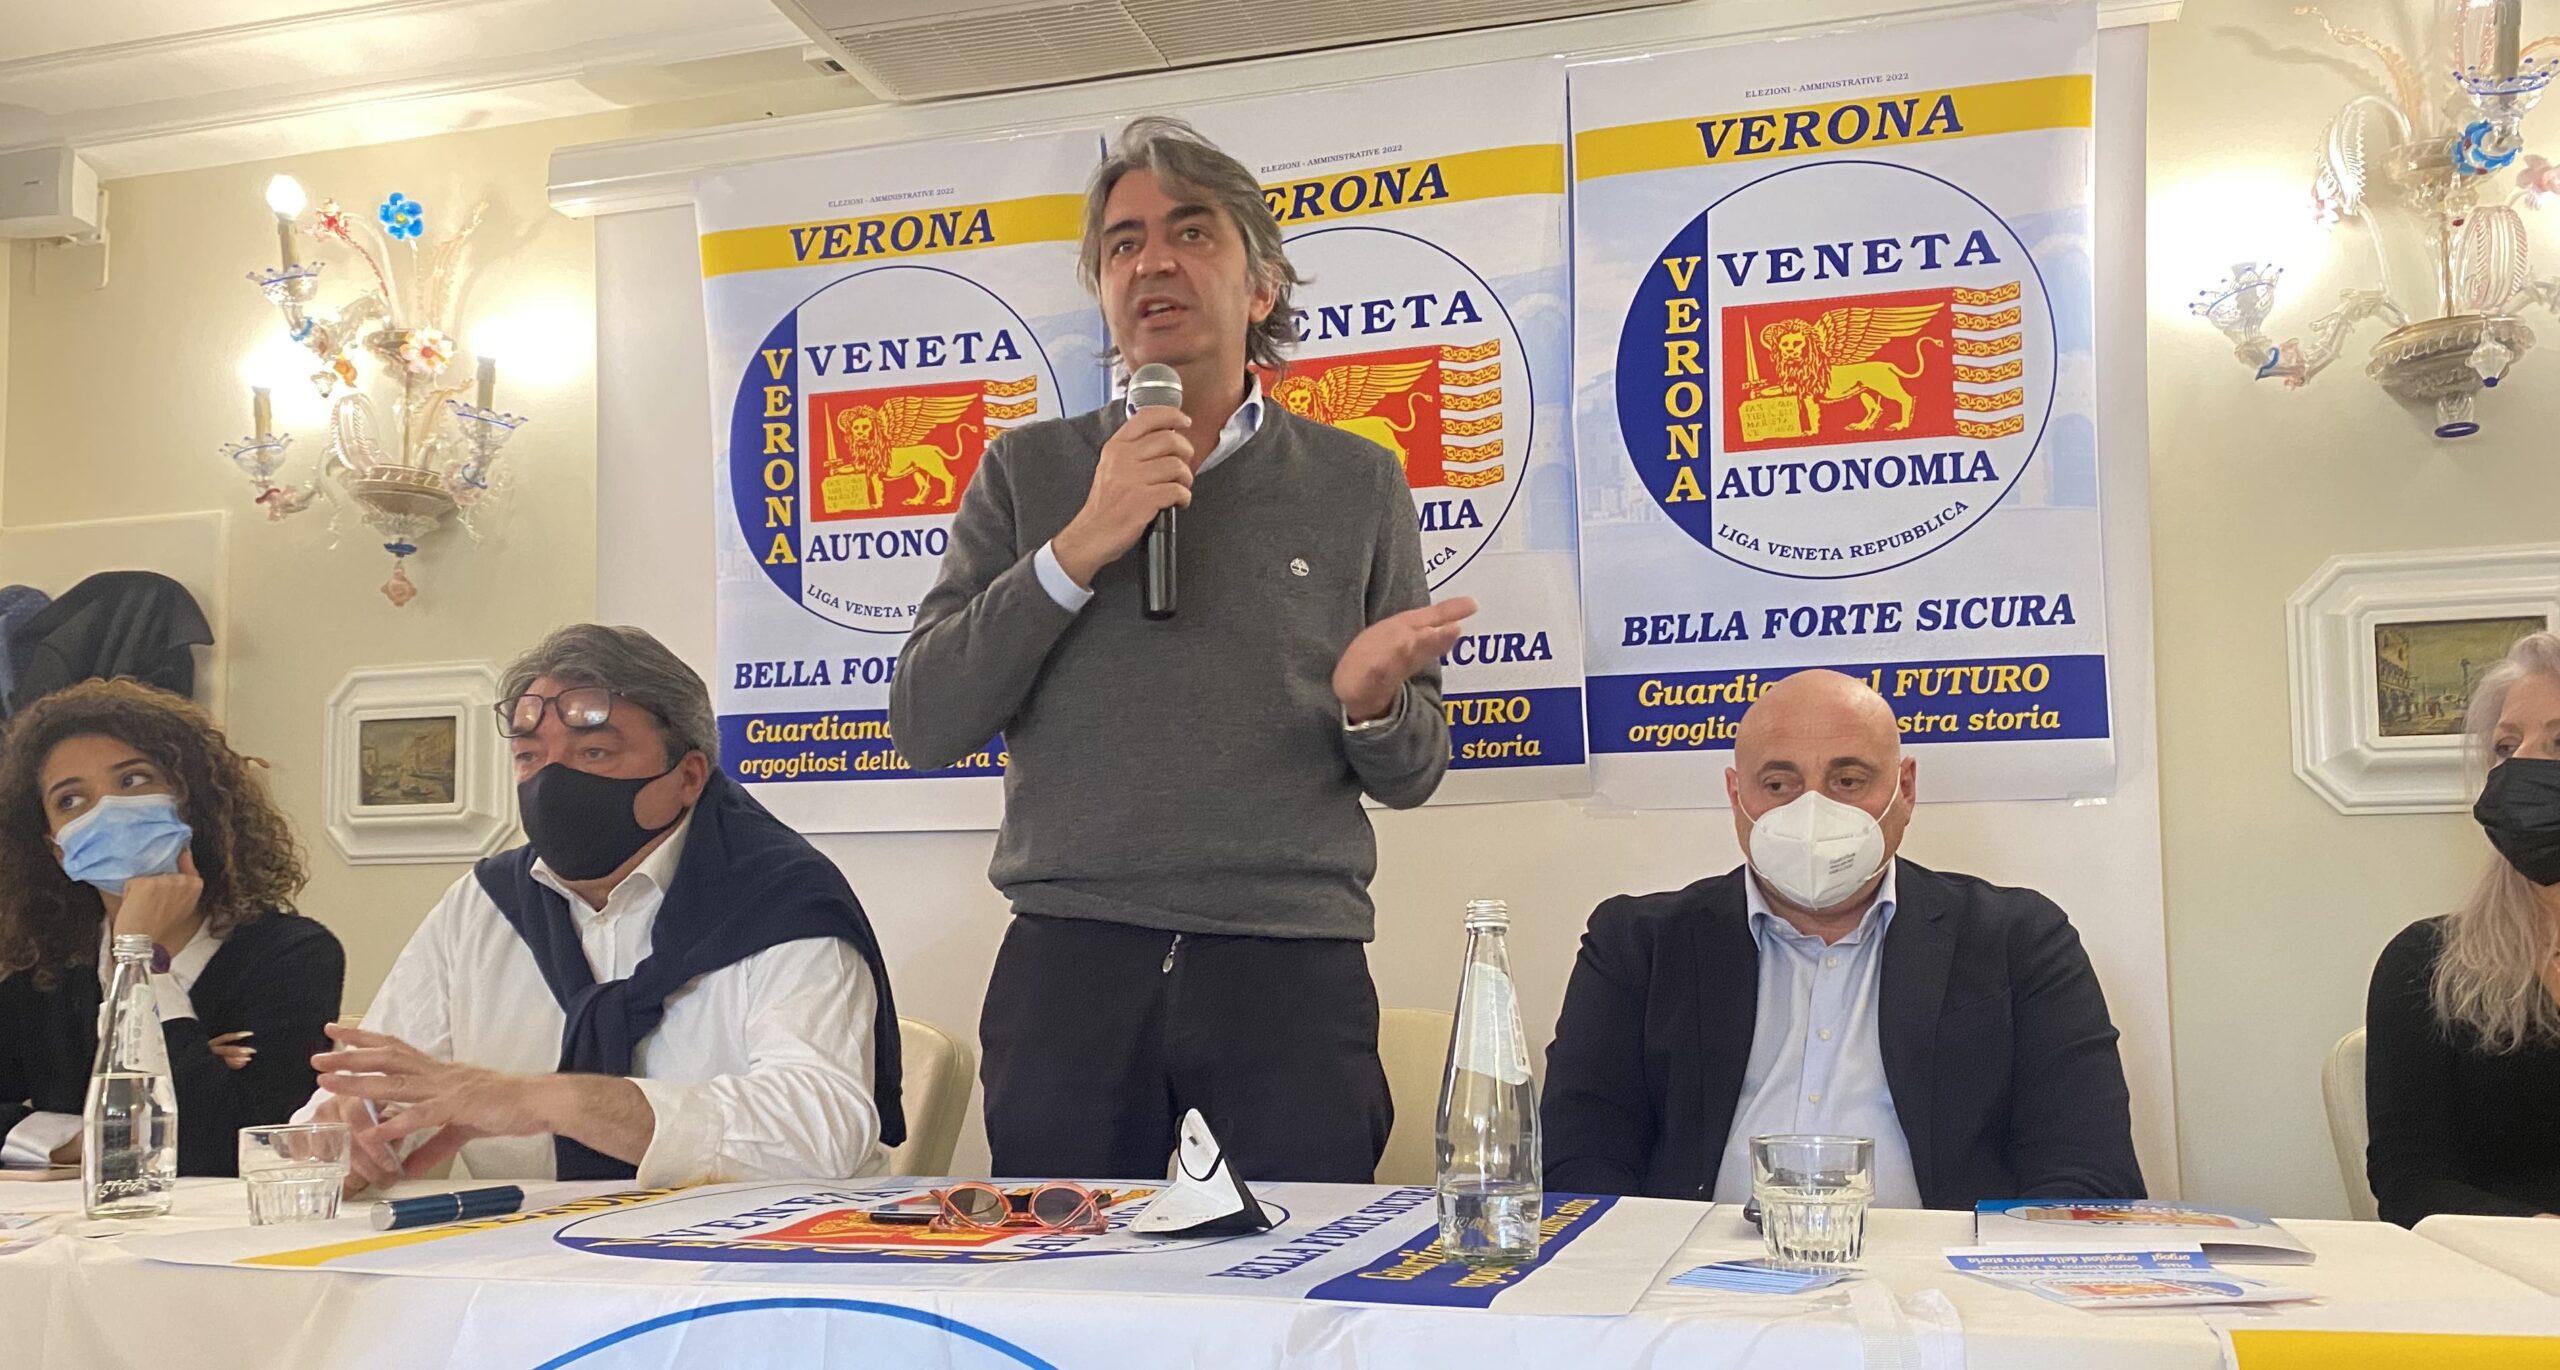 Veneta Autonomia appoggia Federico Sboarina nella sua ri-candidatura a sindaco di Verona